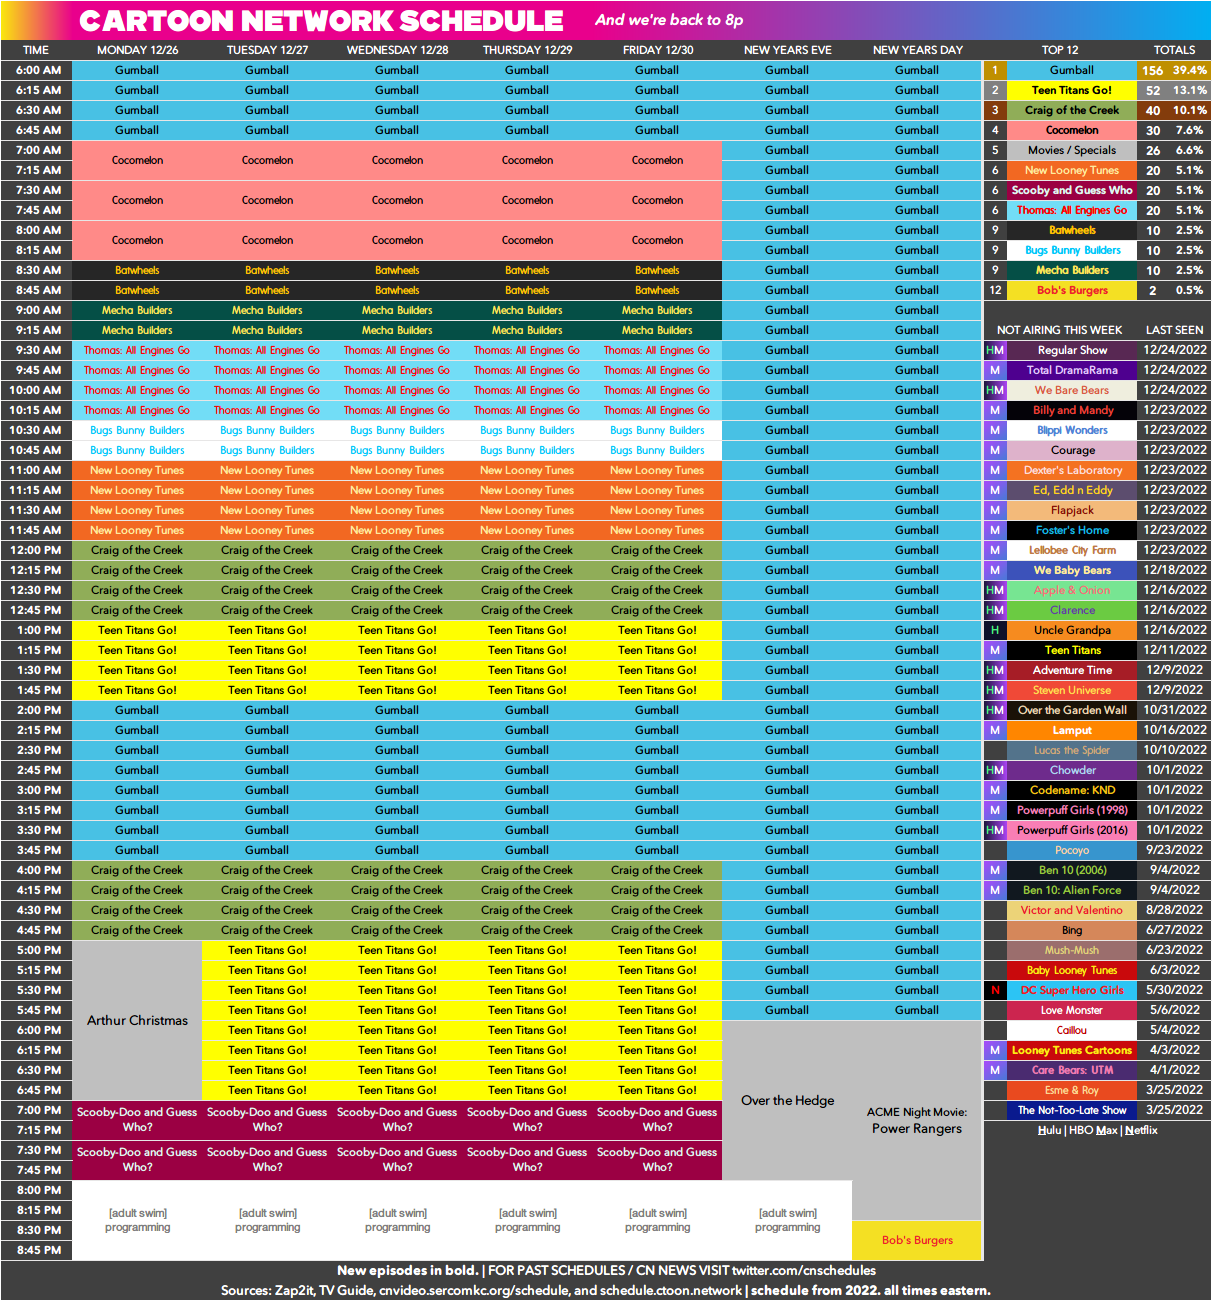 Cartoon Network's Schedule! by BobCardsForever on DeviantArt